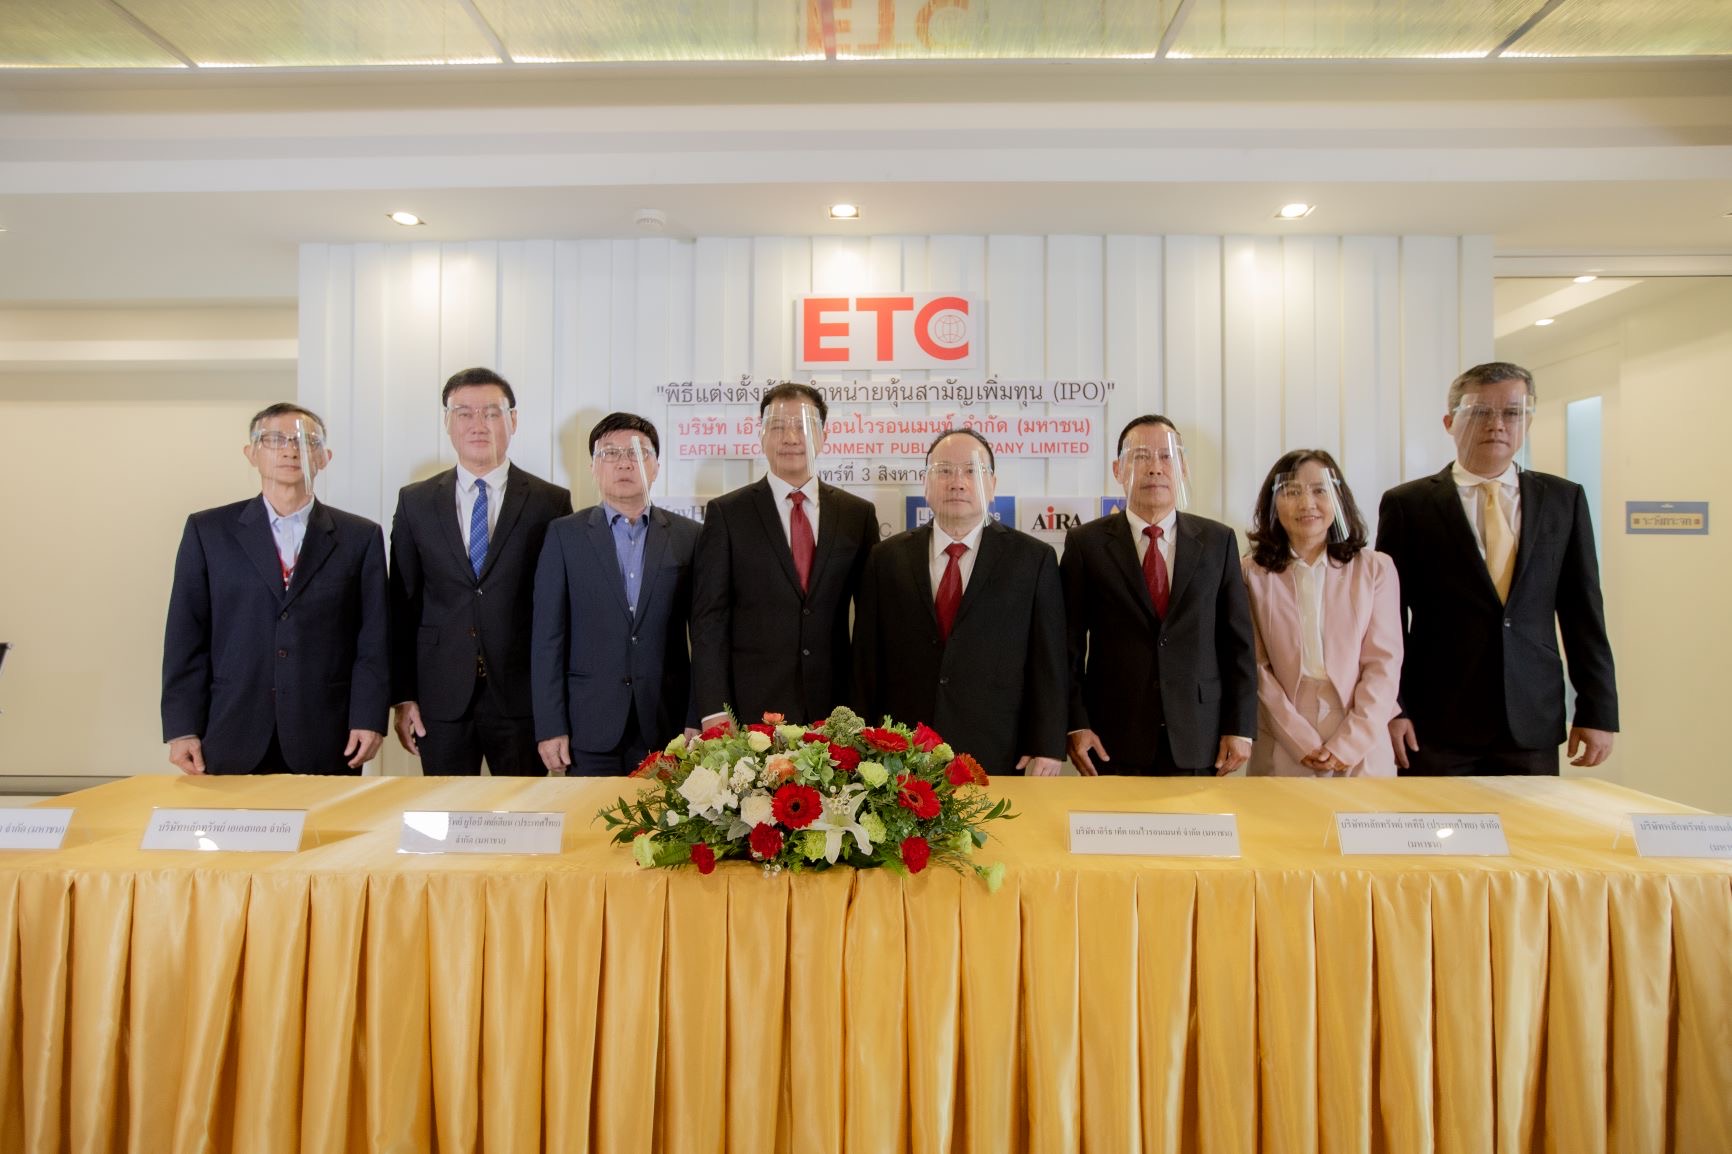 ETC โรงไฟฟ้าขยะตัวแรกของไทย เคาะราคาไอพีโอ2.60 บาท  เปิดจอง 4-11 ส.ค นี้